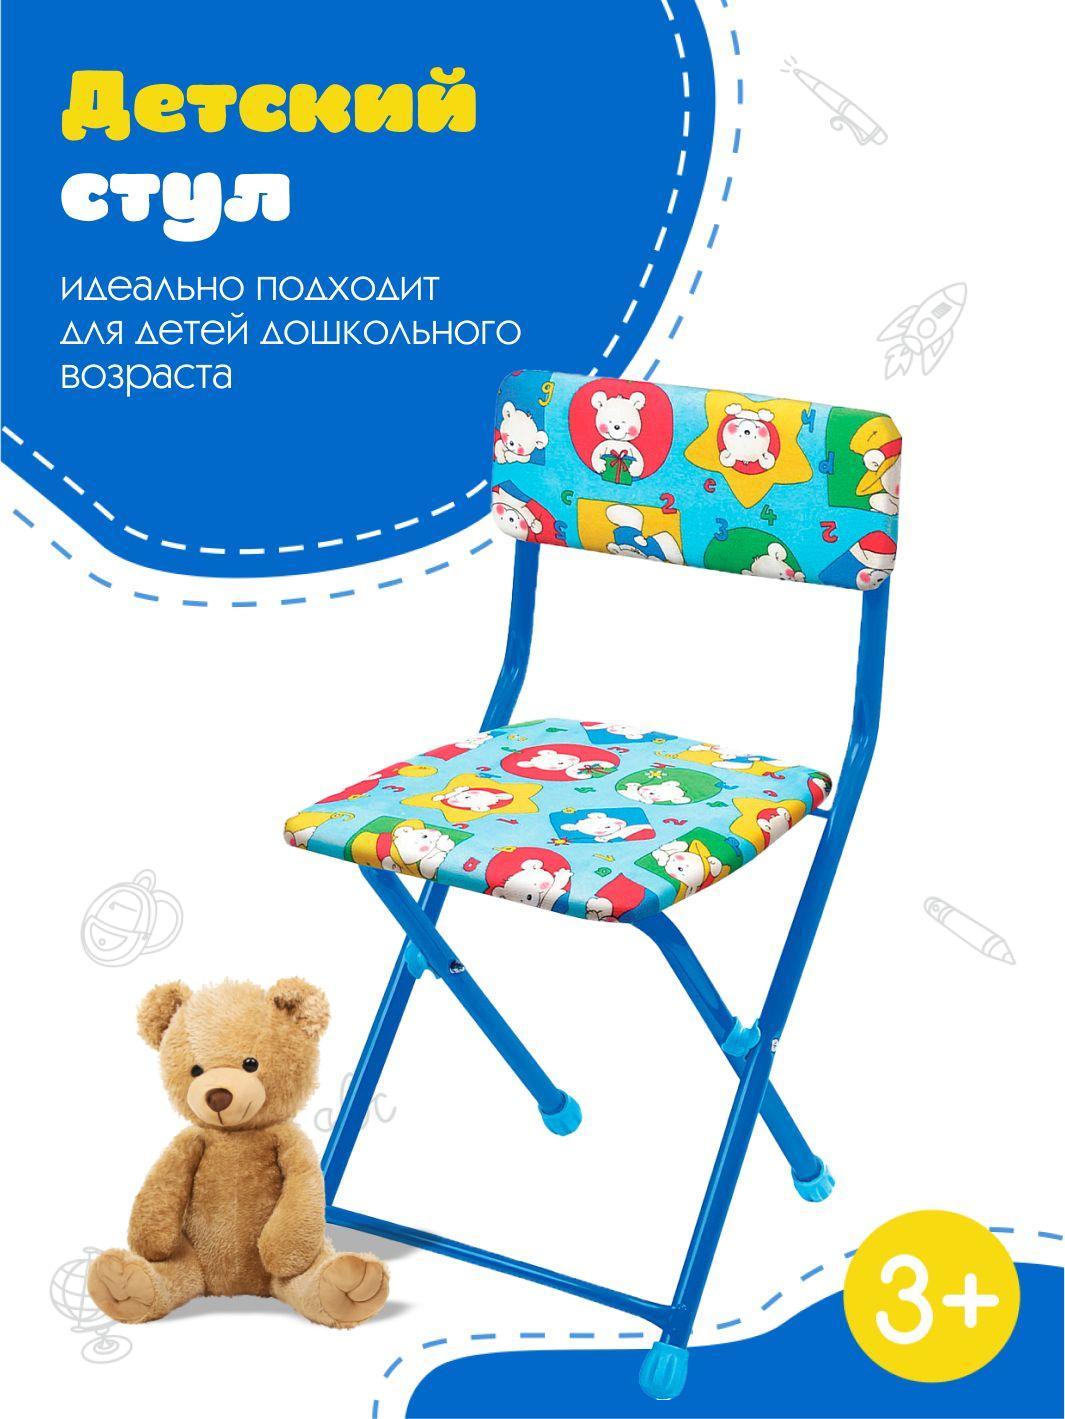 InHome | Складной мягкий стульчик для детей от 3 до 7 лет, 560x260x290 мм, СТУ1. Цвет: медвежата